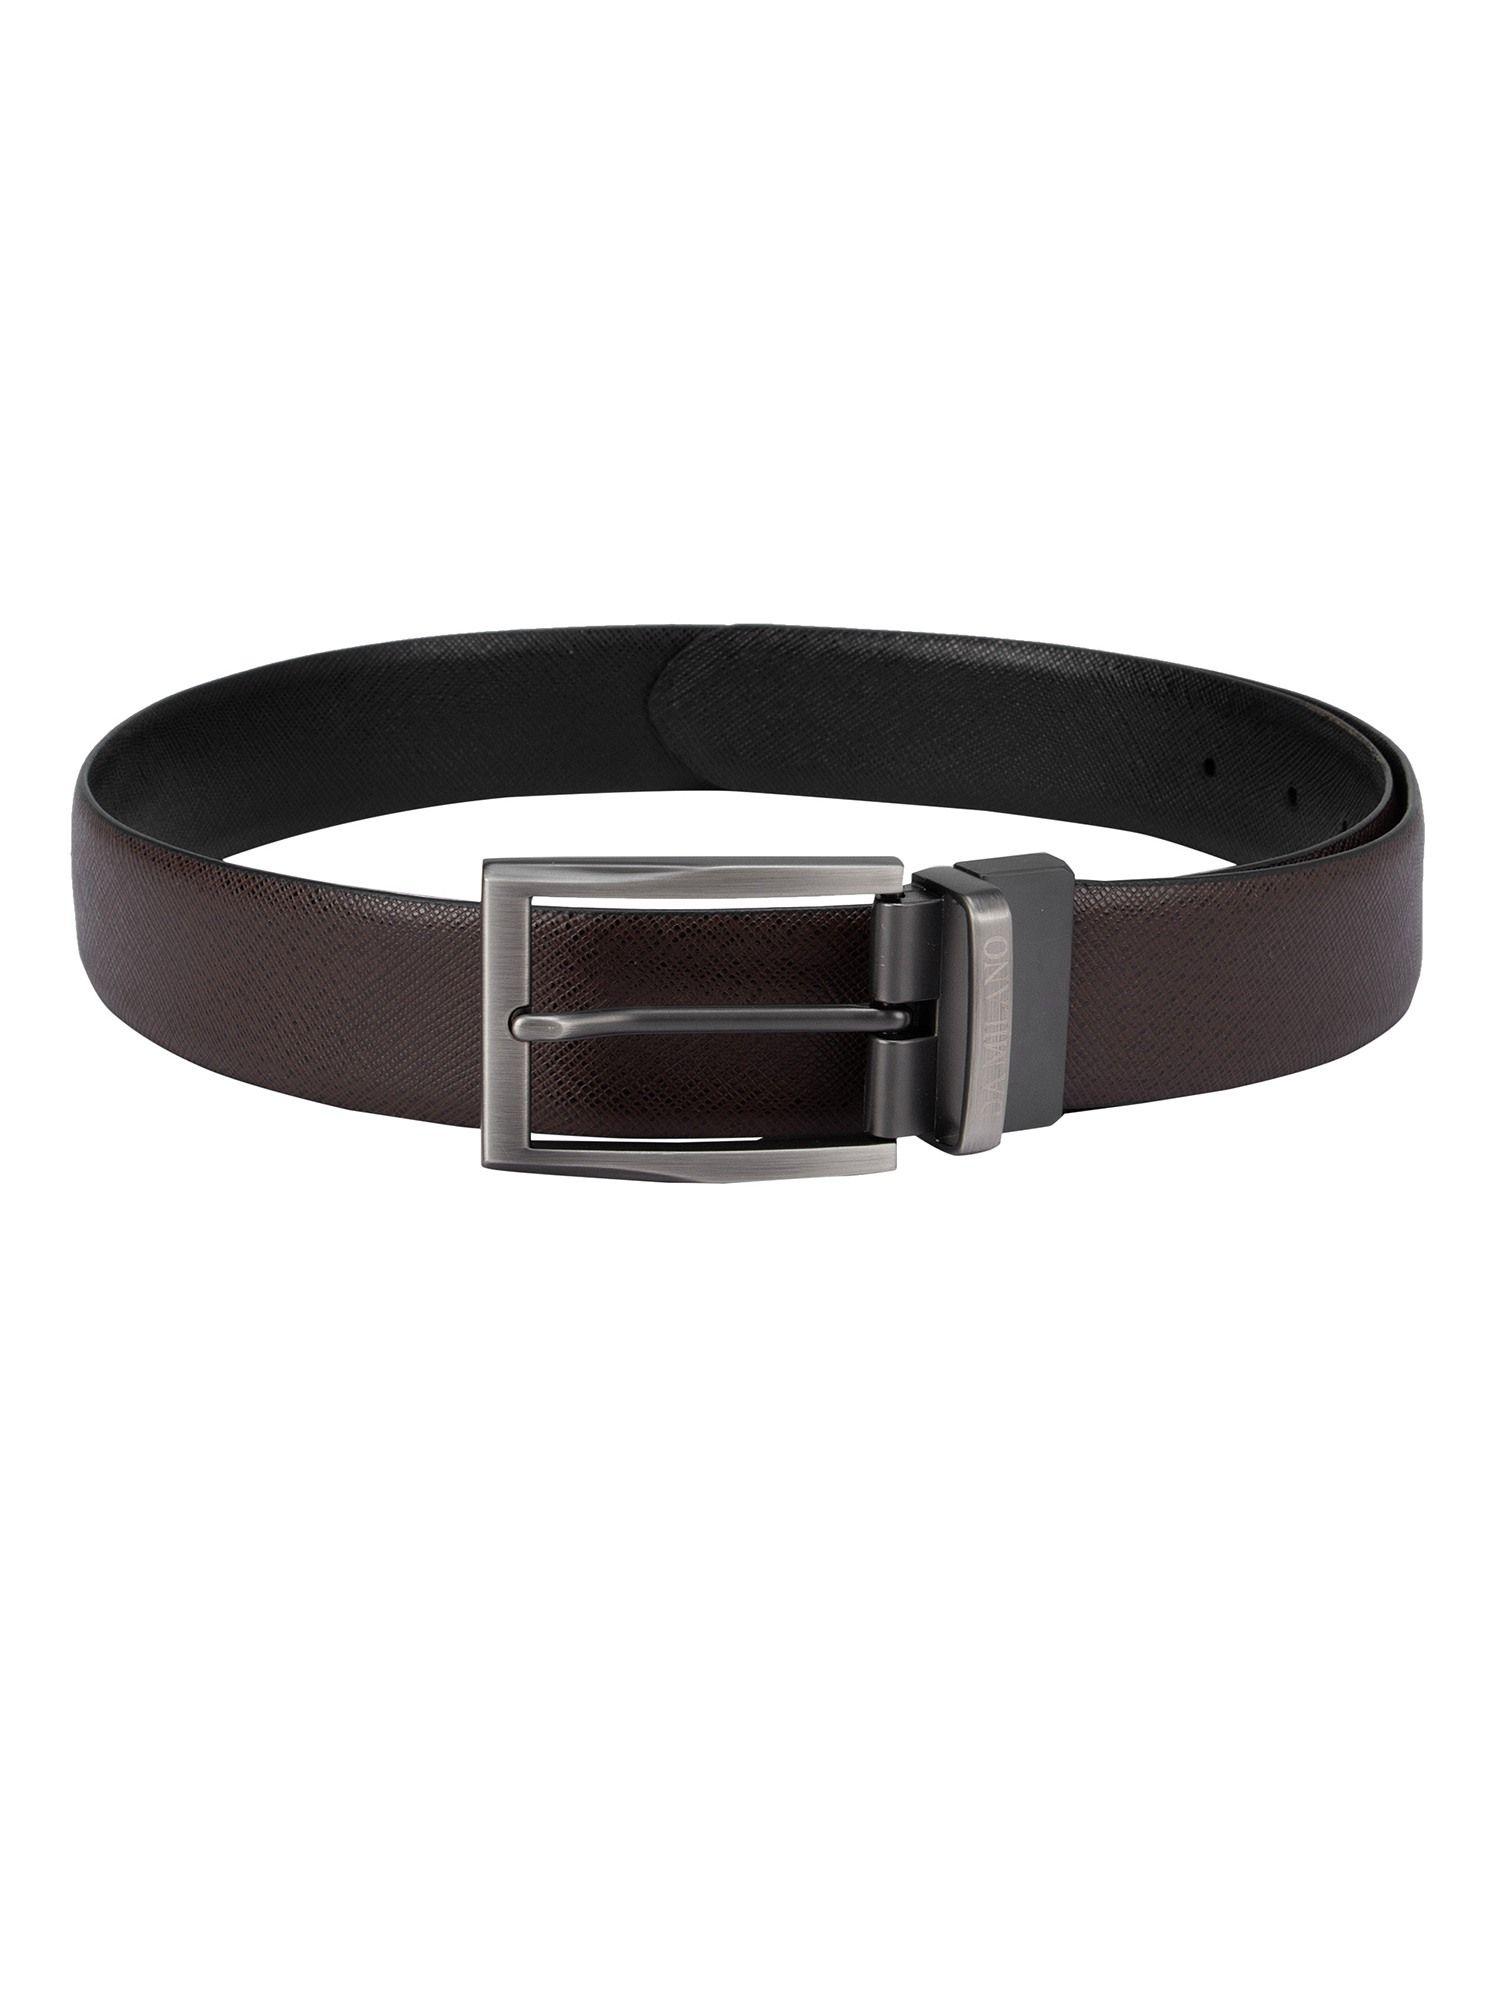 genuine leather brown & black reversible belt